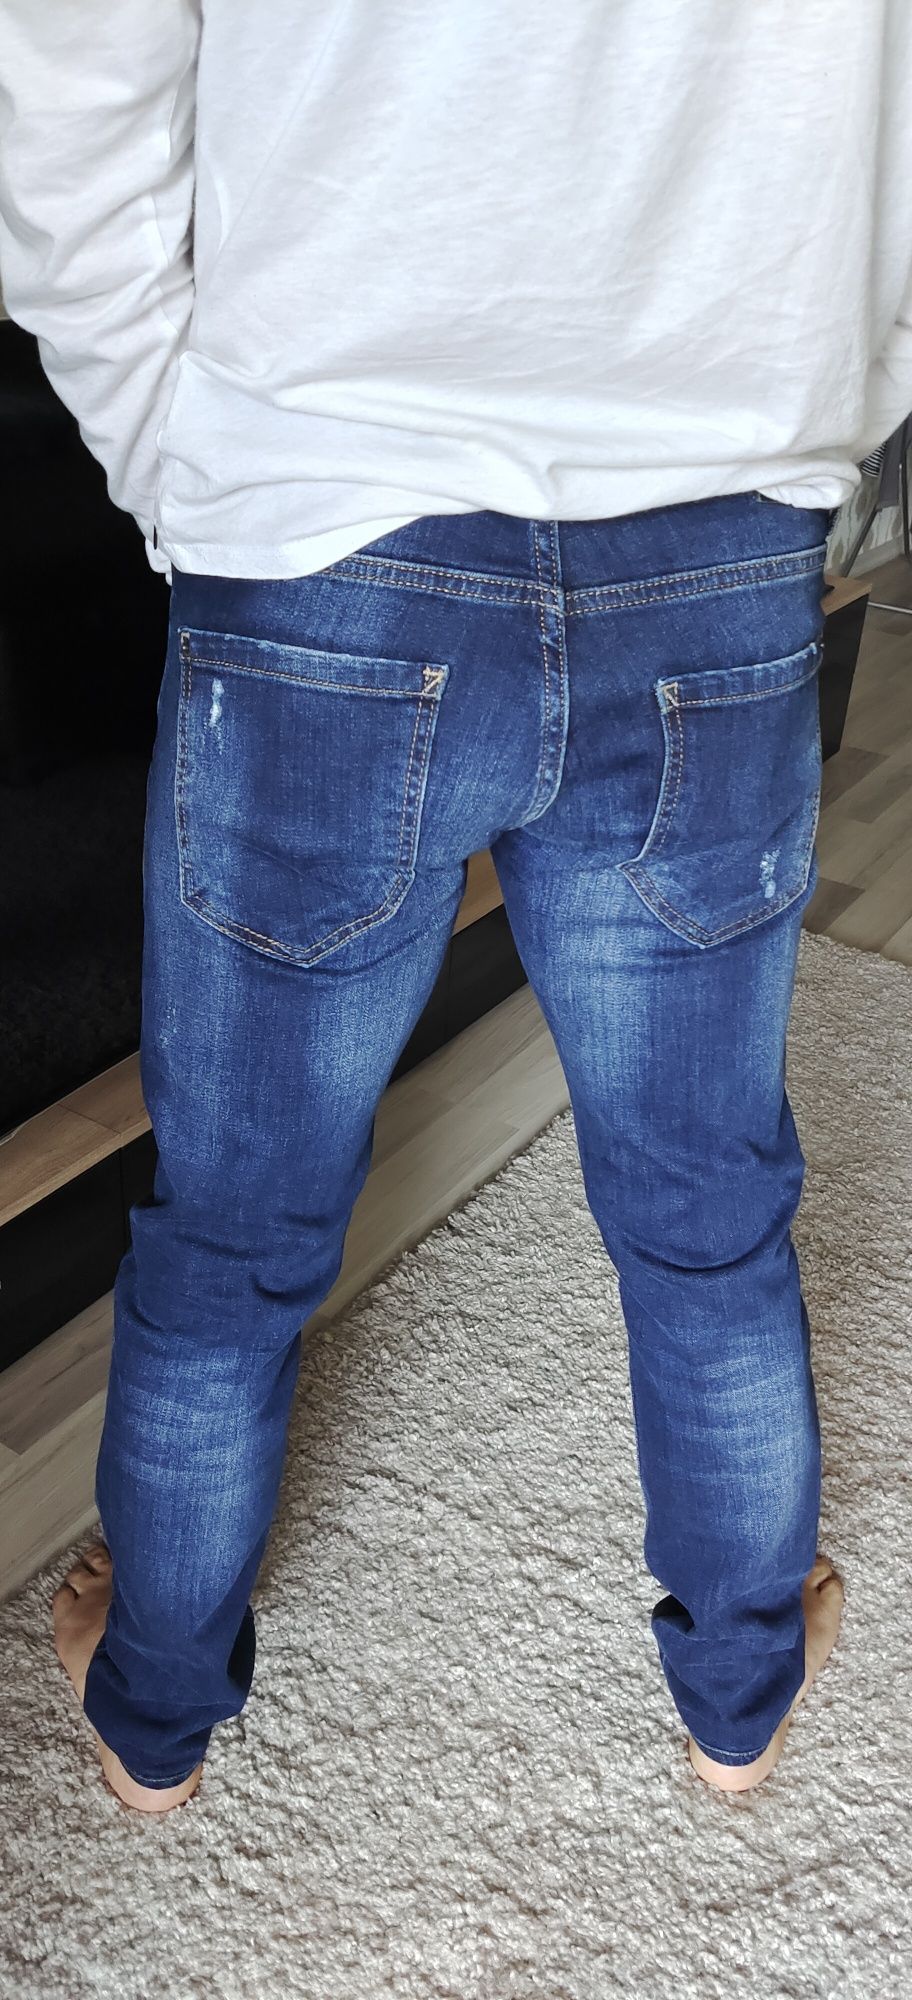 Vând jeans Dsquared2 Size 48 originali în stare excelentă